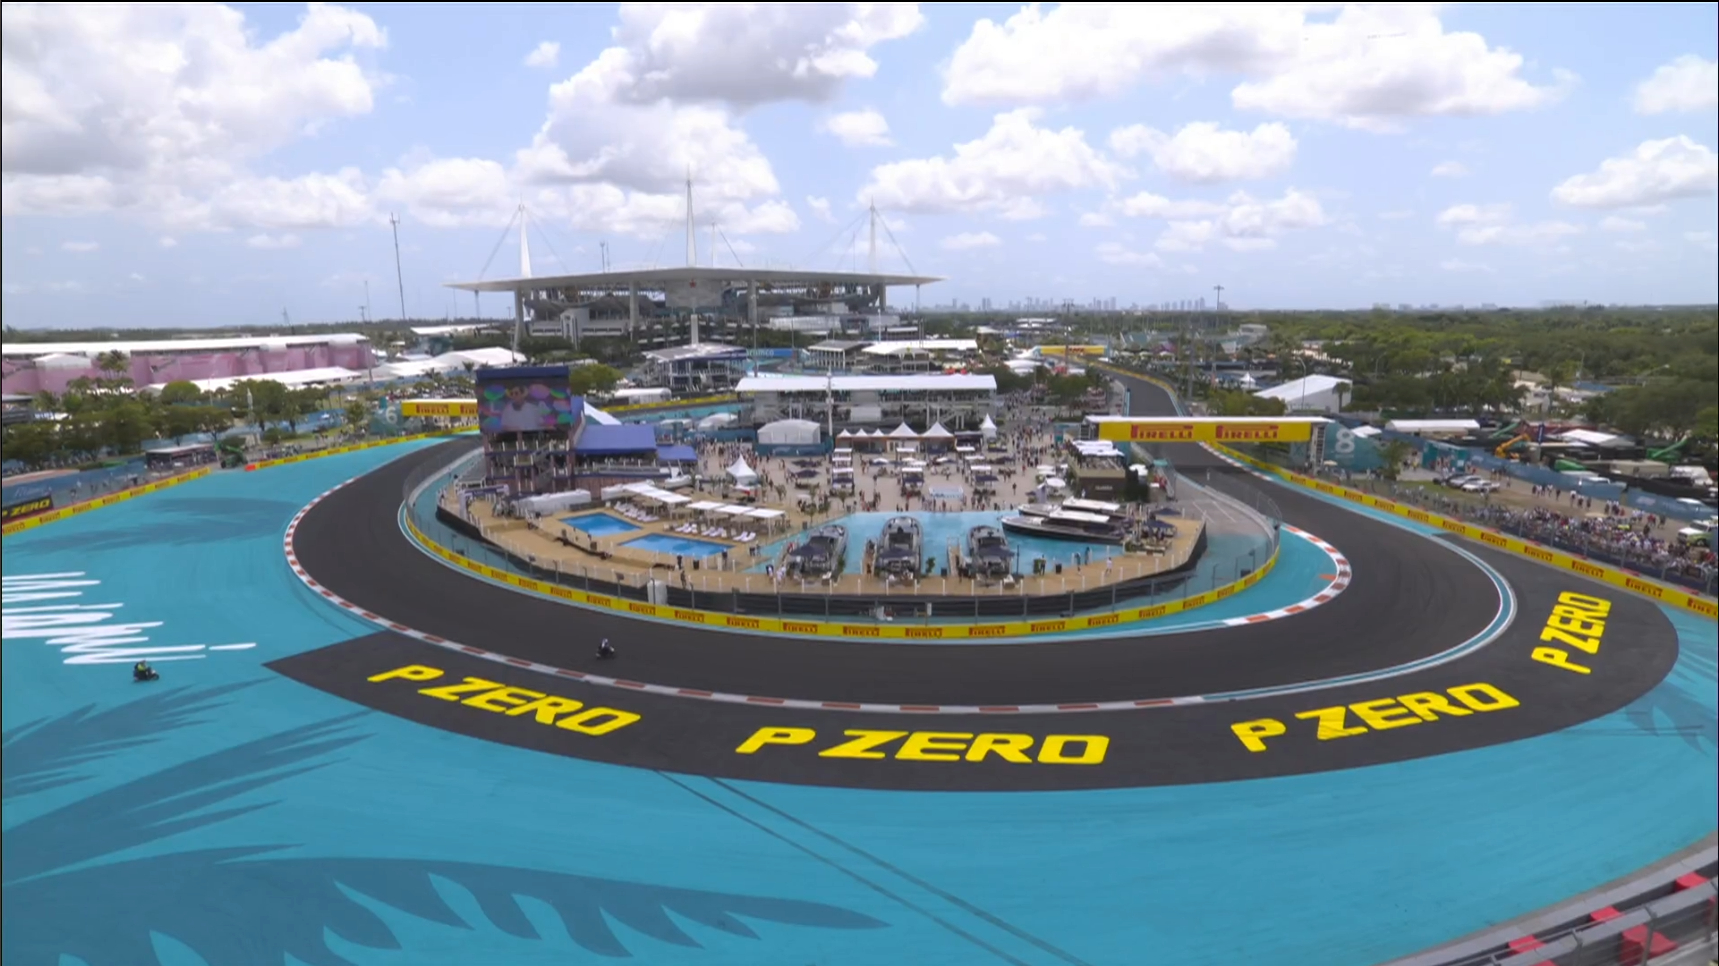 硬石体育场将成为迈阿密大奖赛的“F1车队村”:行星F1